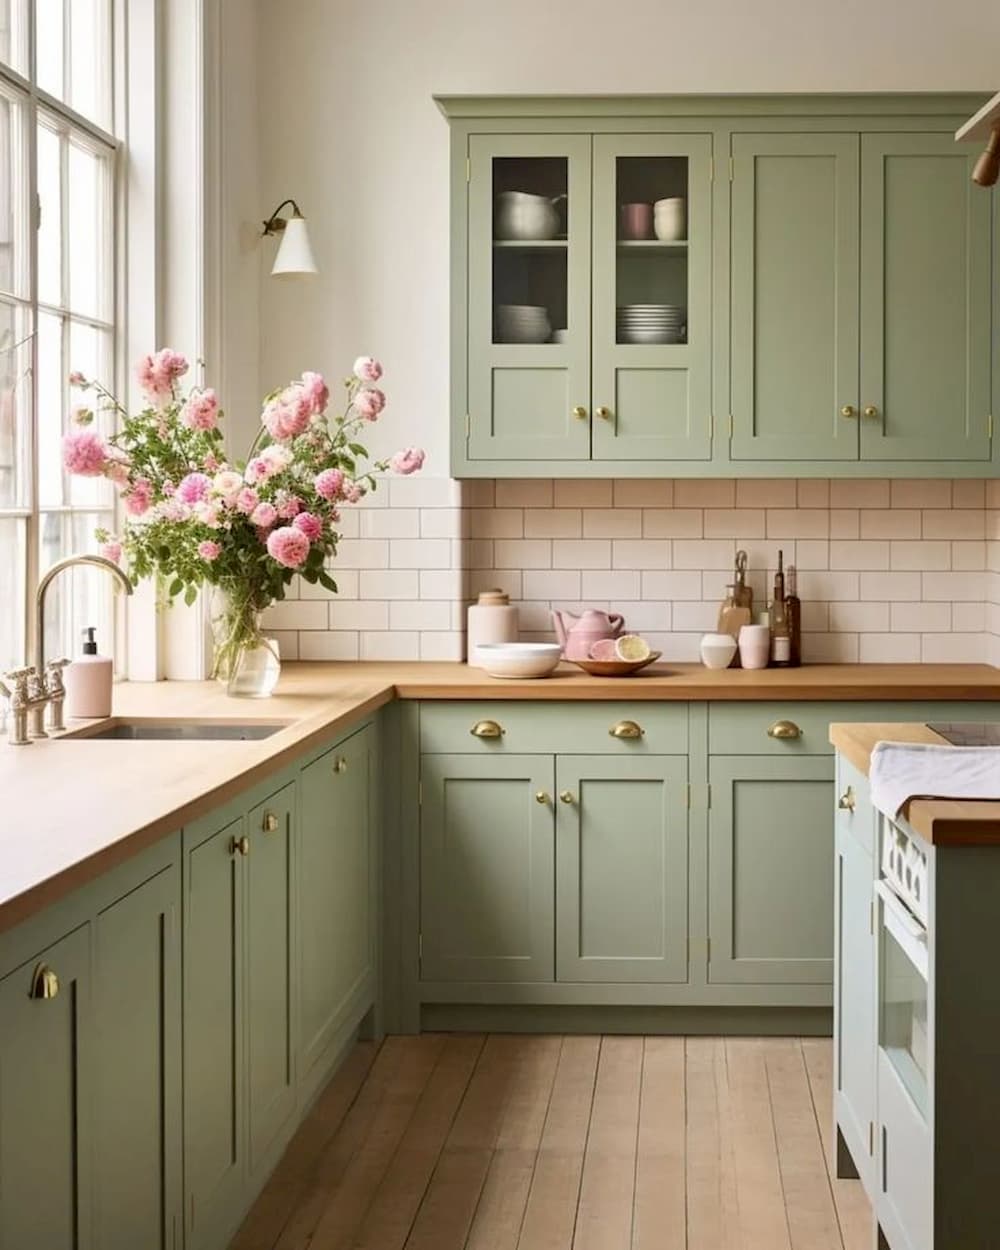 کابینت سبز پاستلی در چیدمان آشپزخانه